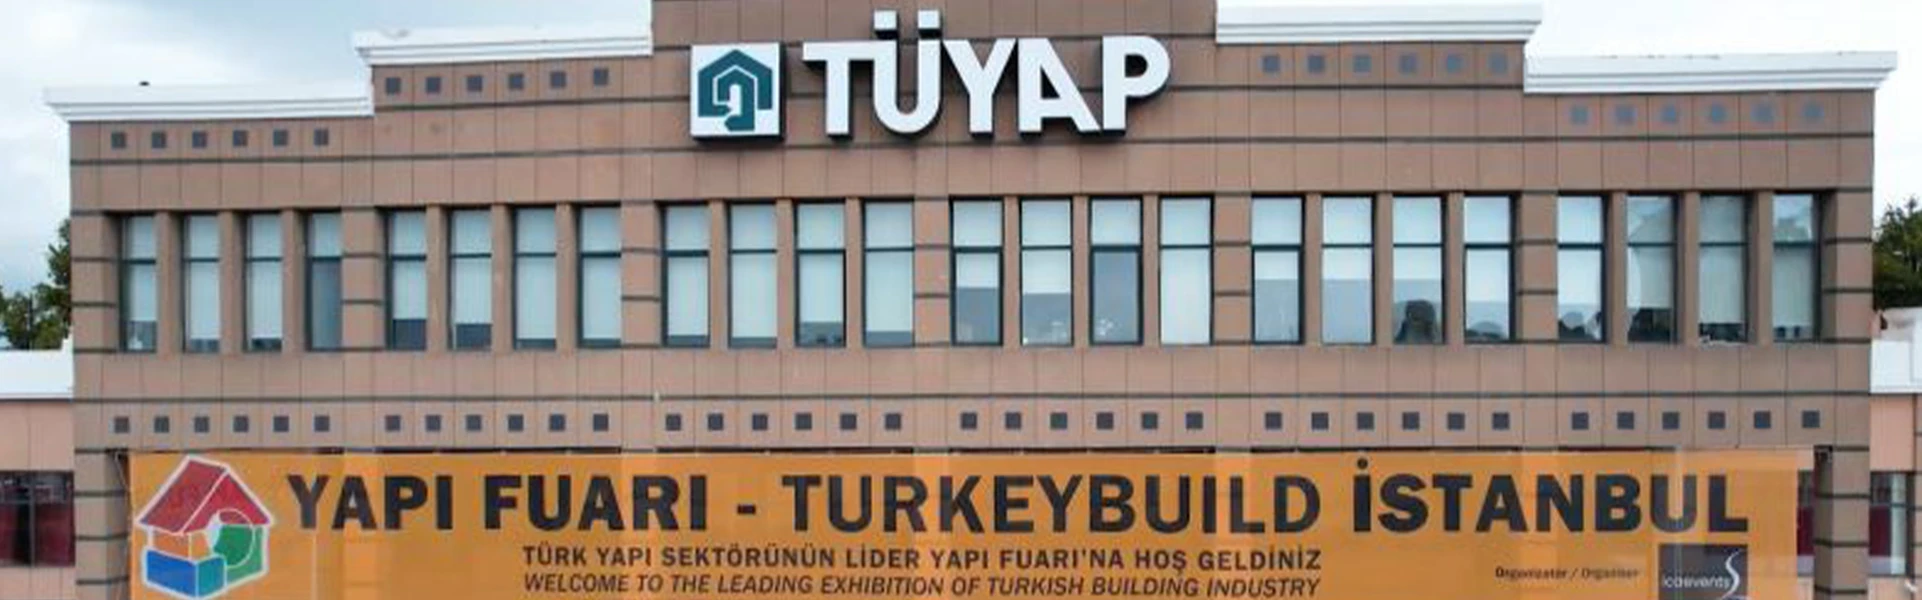 تقویم نمایشگاهی مرکز Tuyap استانبول - ترکیه Turkey - Istanbul - Tuyap expo exhibition calendar